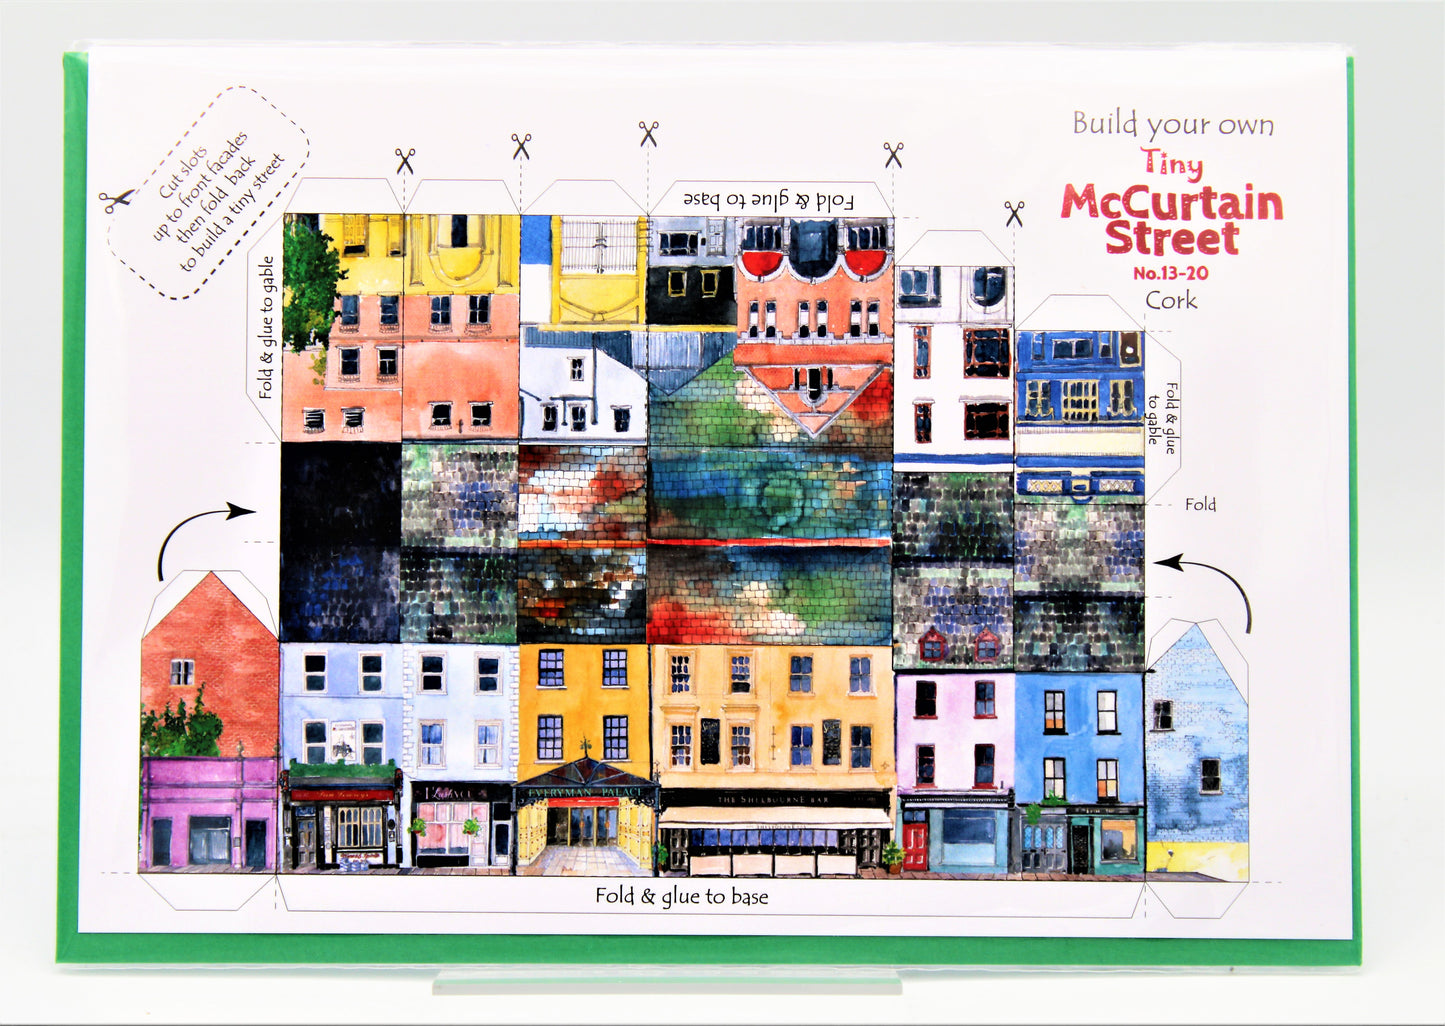 Tiny Ireland: Build Your Own Tiny McCurtain Street No.13-20